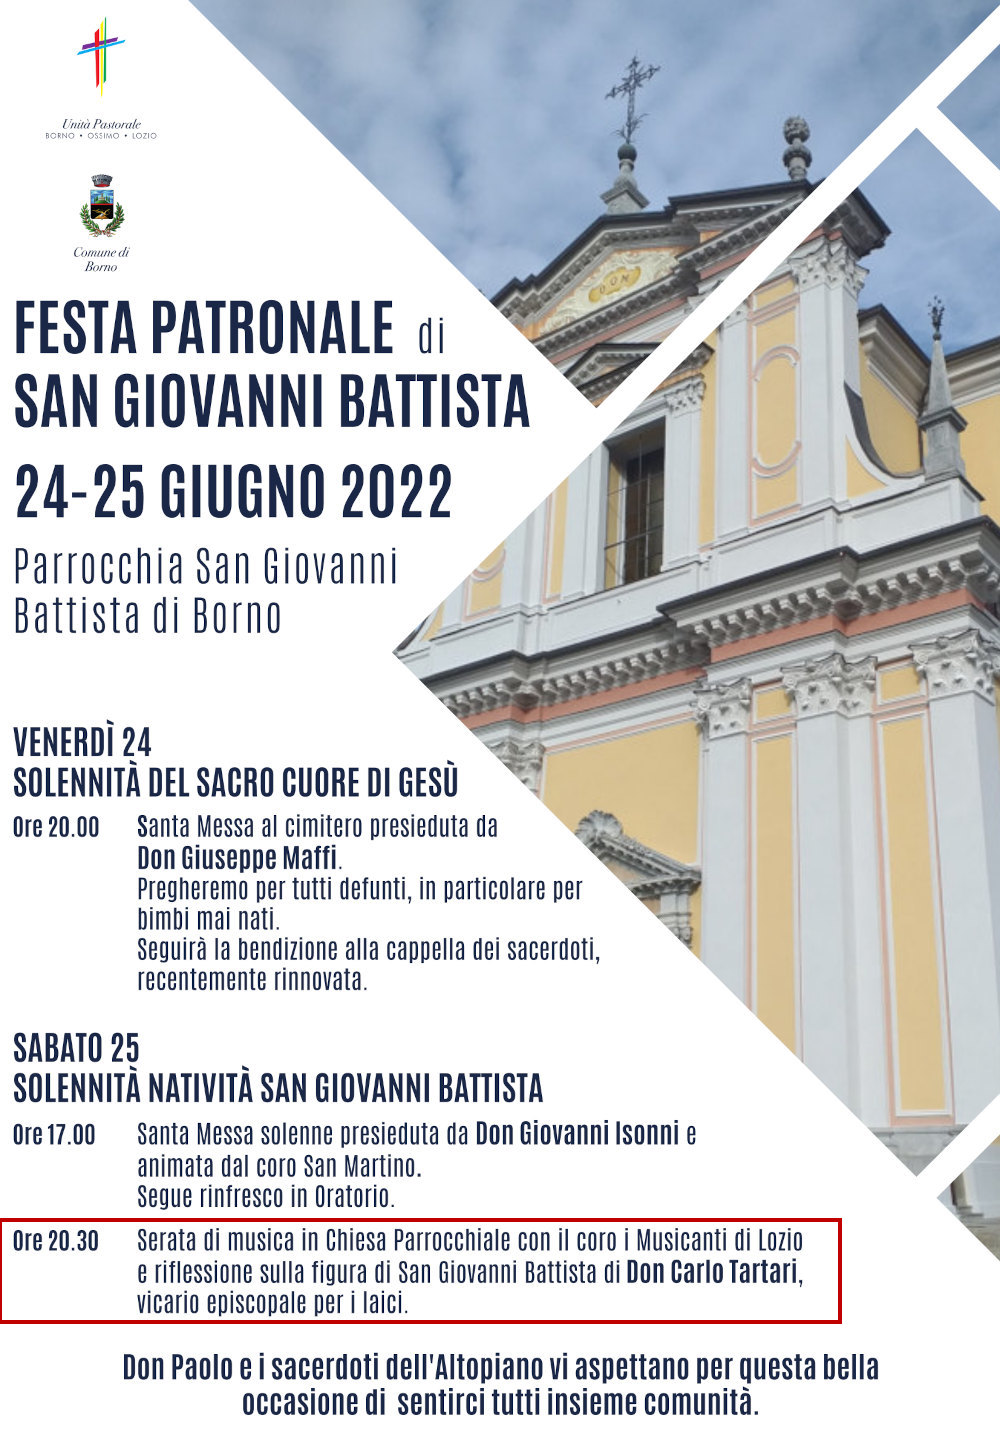 24-6-2022: Festa patrono s. Giovanni Battista Borno
